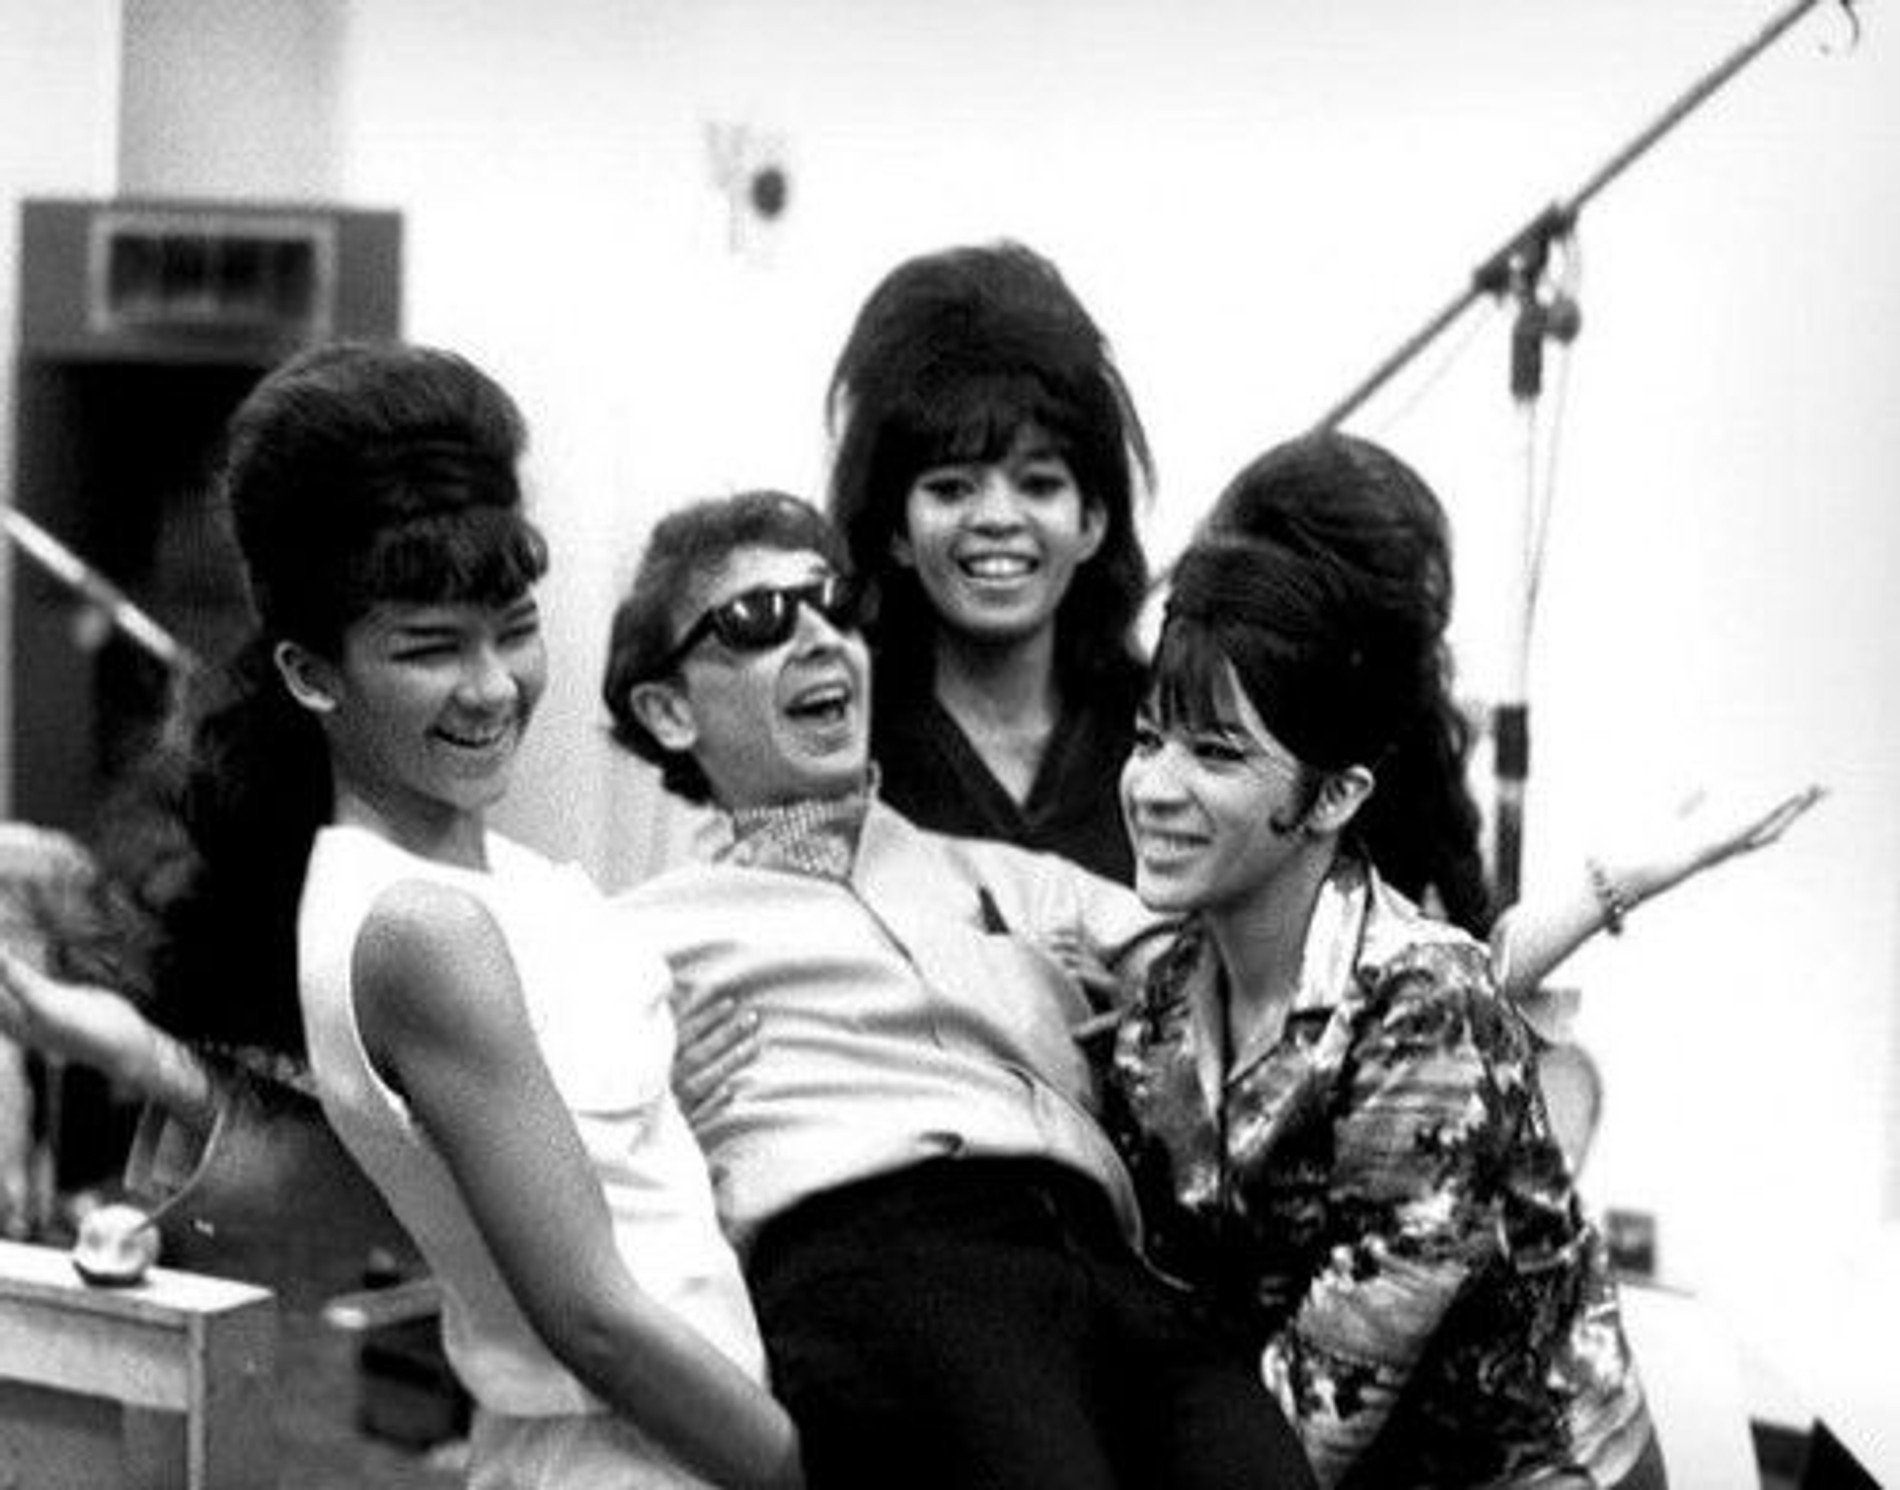  Фил Спектор и группа Ronettes. Фото: LA Times